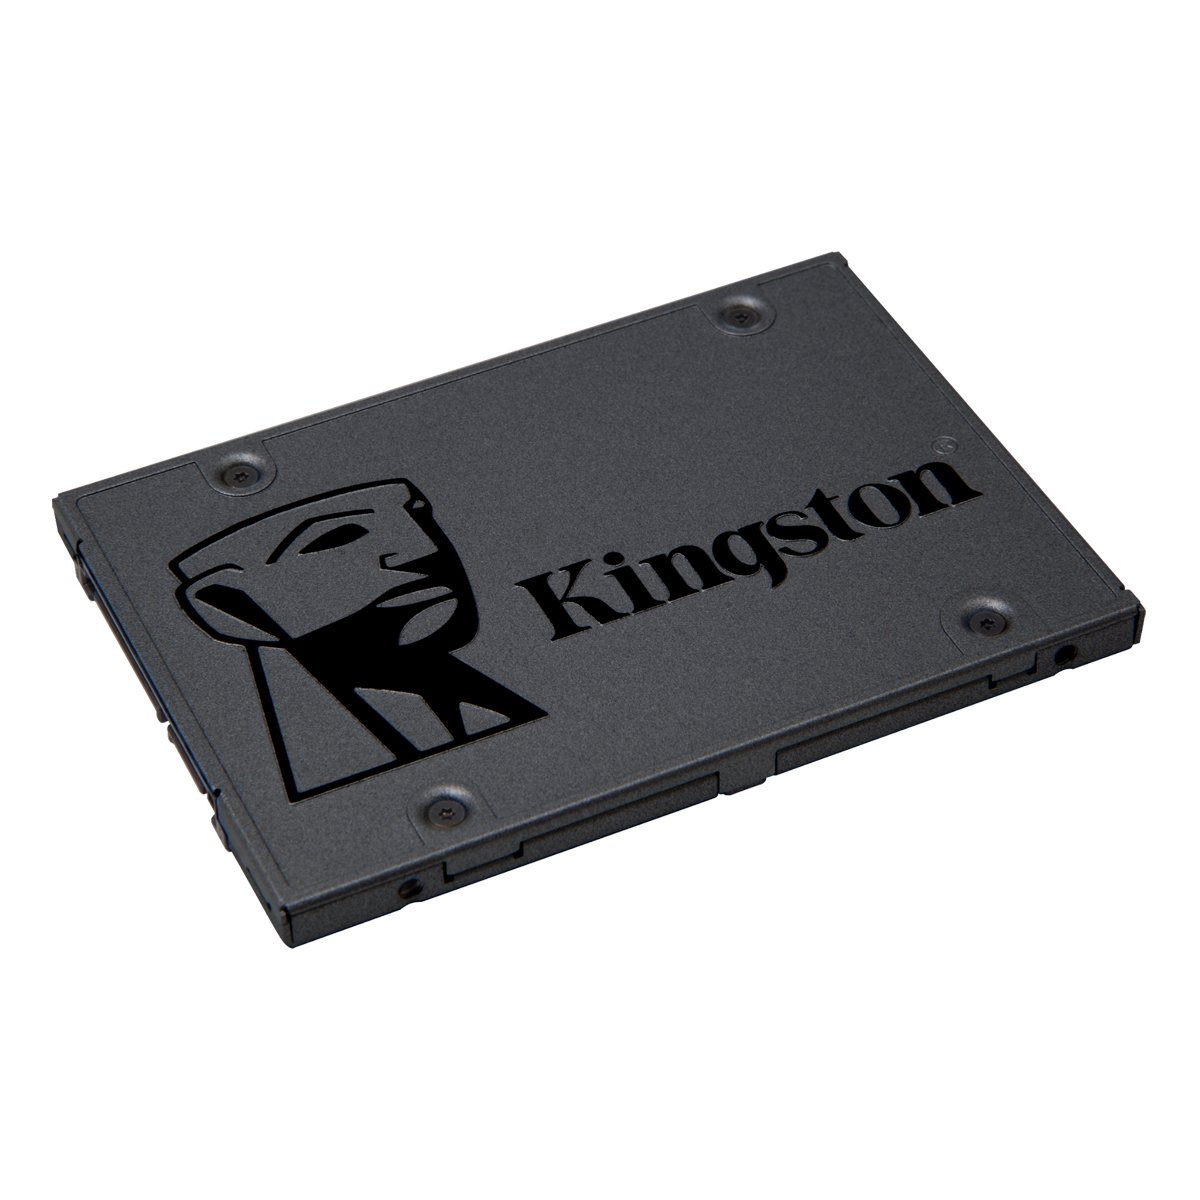 Kingston 120GB A400 2.5" SATA III SSD